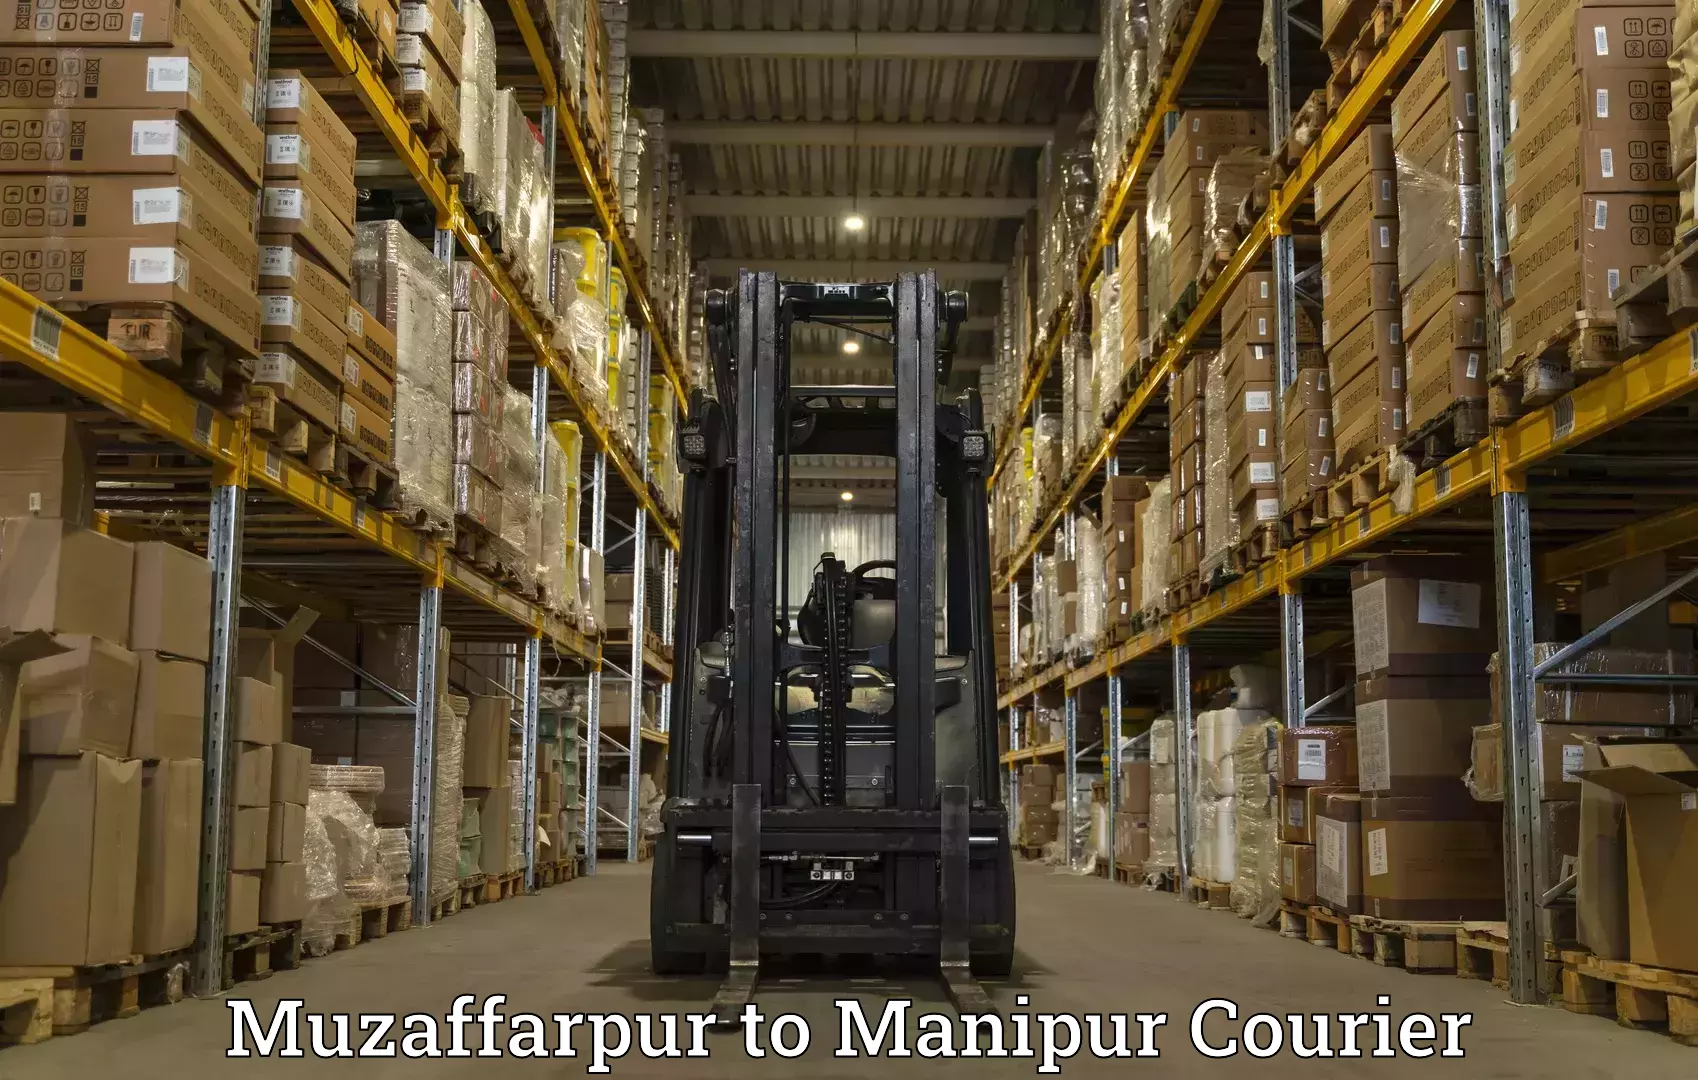 24/7 courier service in Muzaffarpur to Senapati